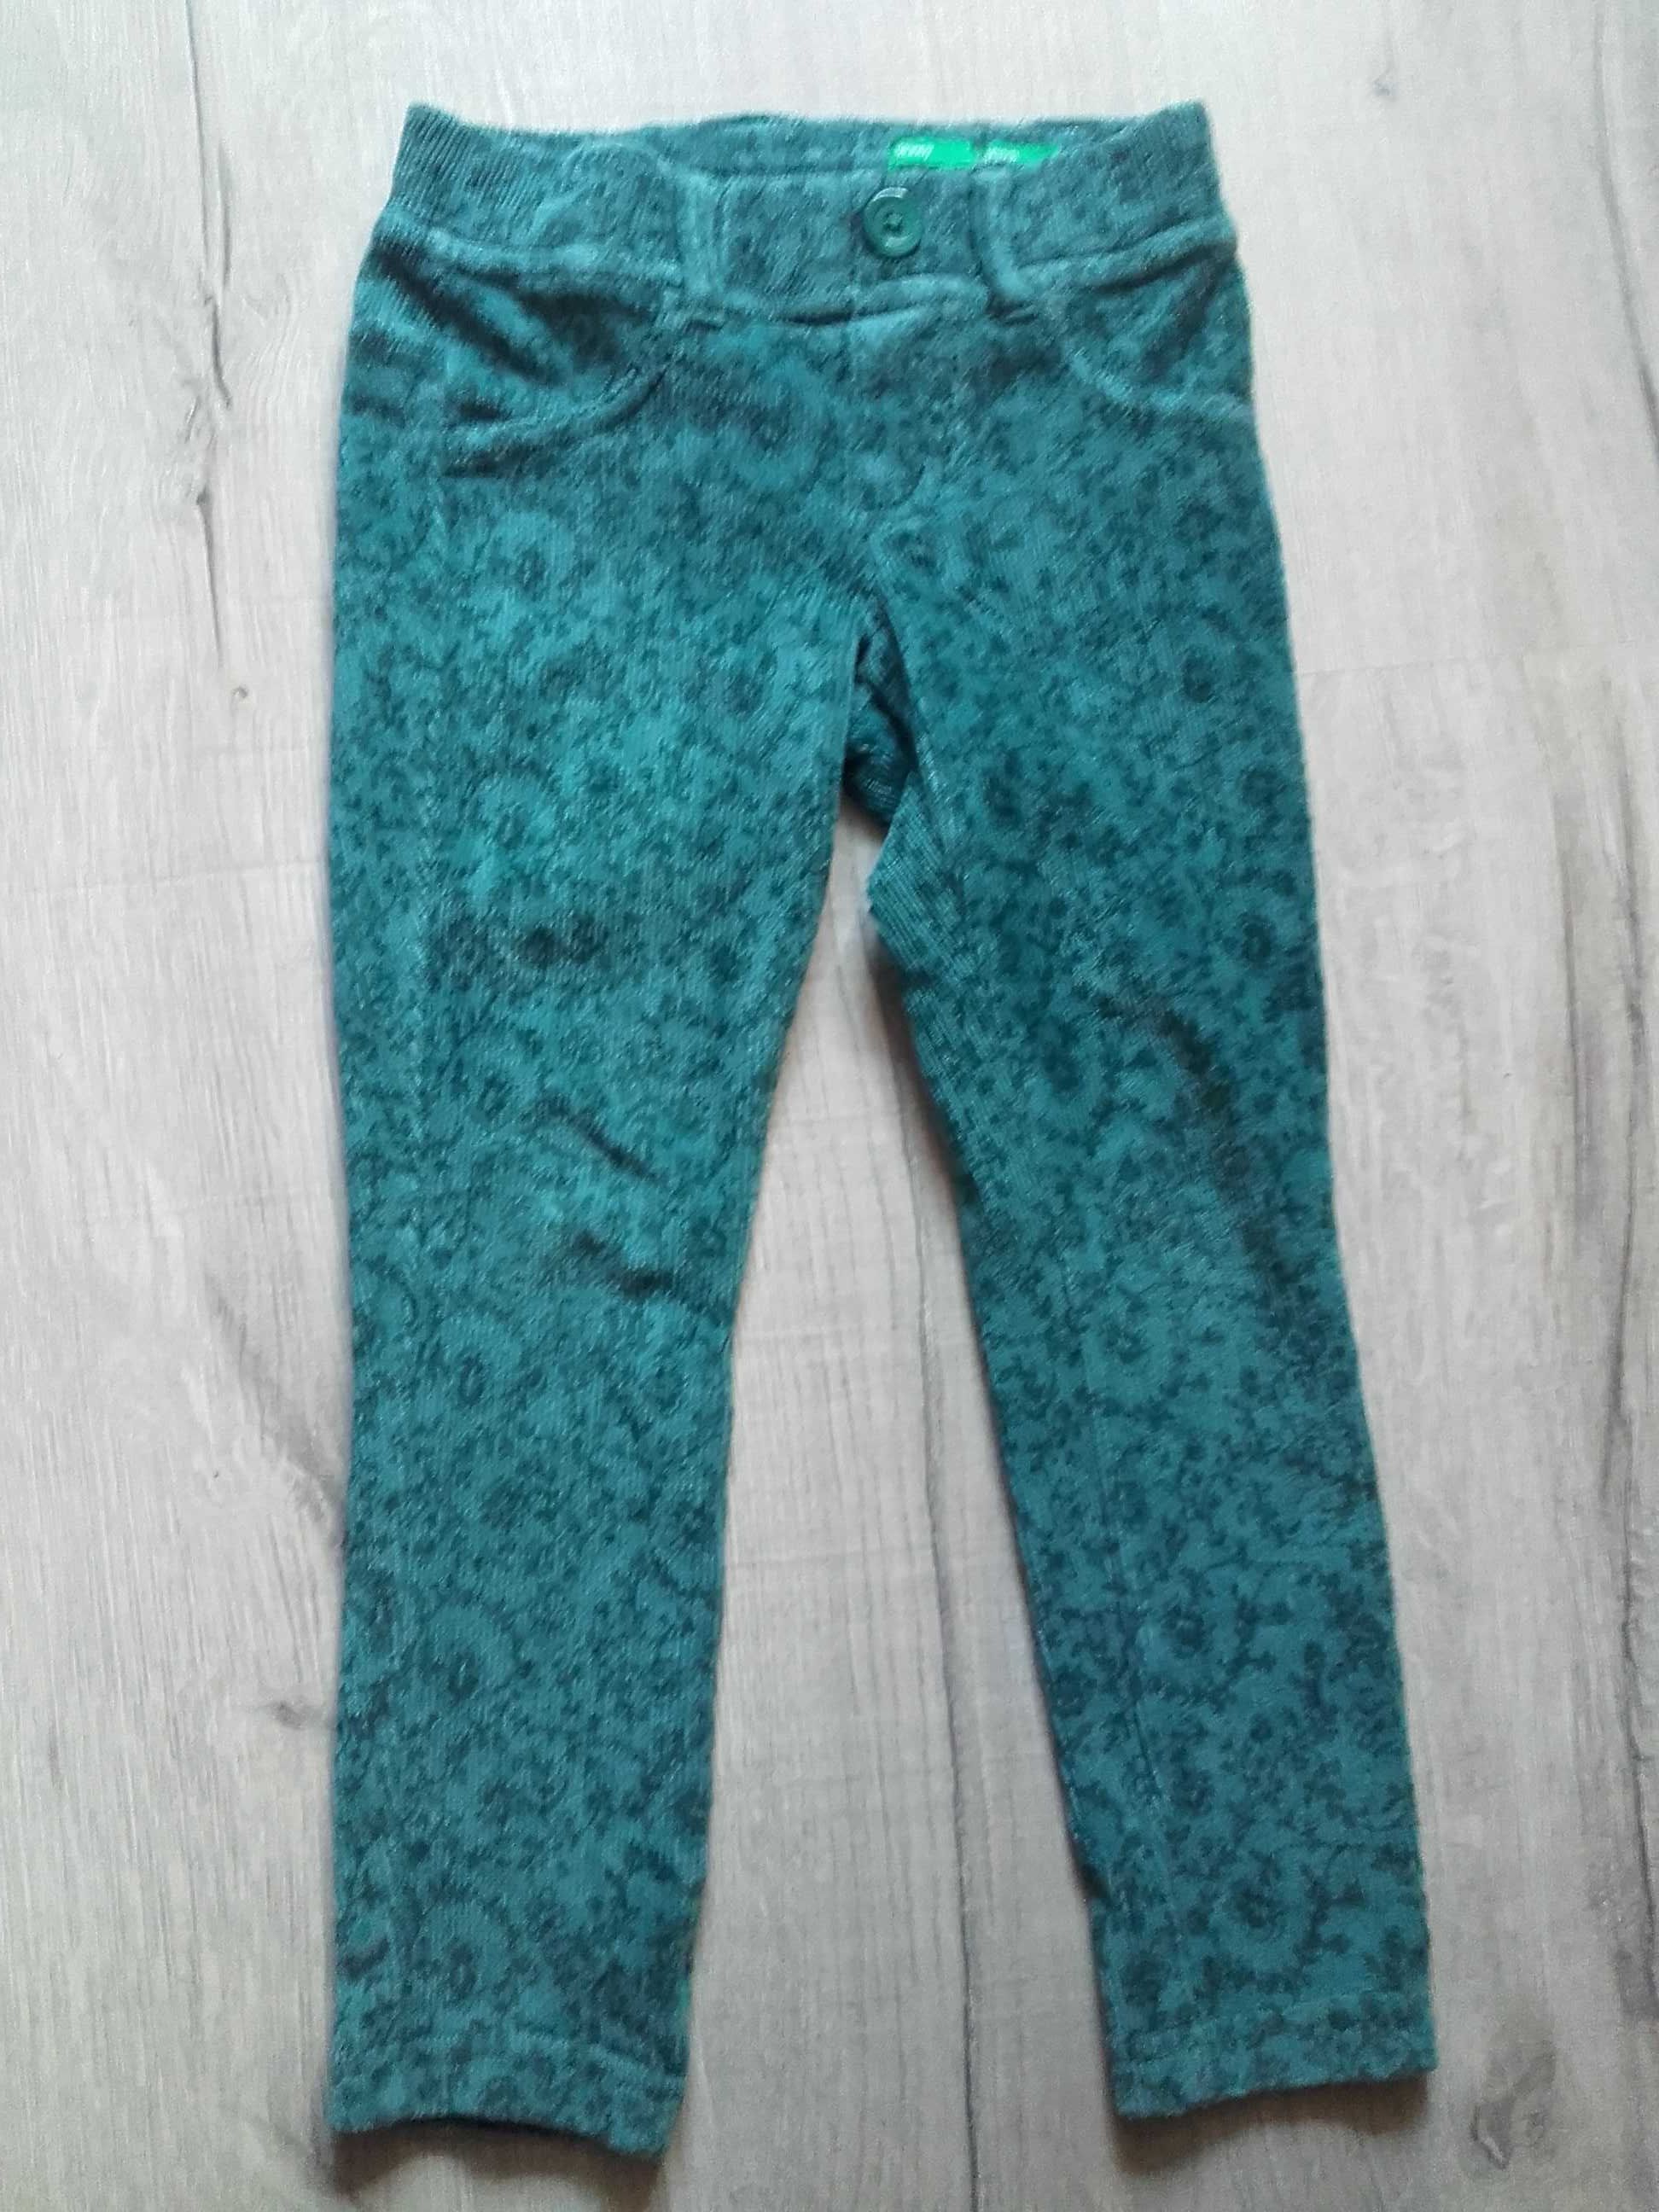 Spodnie/ legginsy BENETTON r. XXS 104 3-4 lata sztruks + bluzka gratis